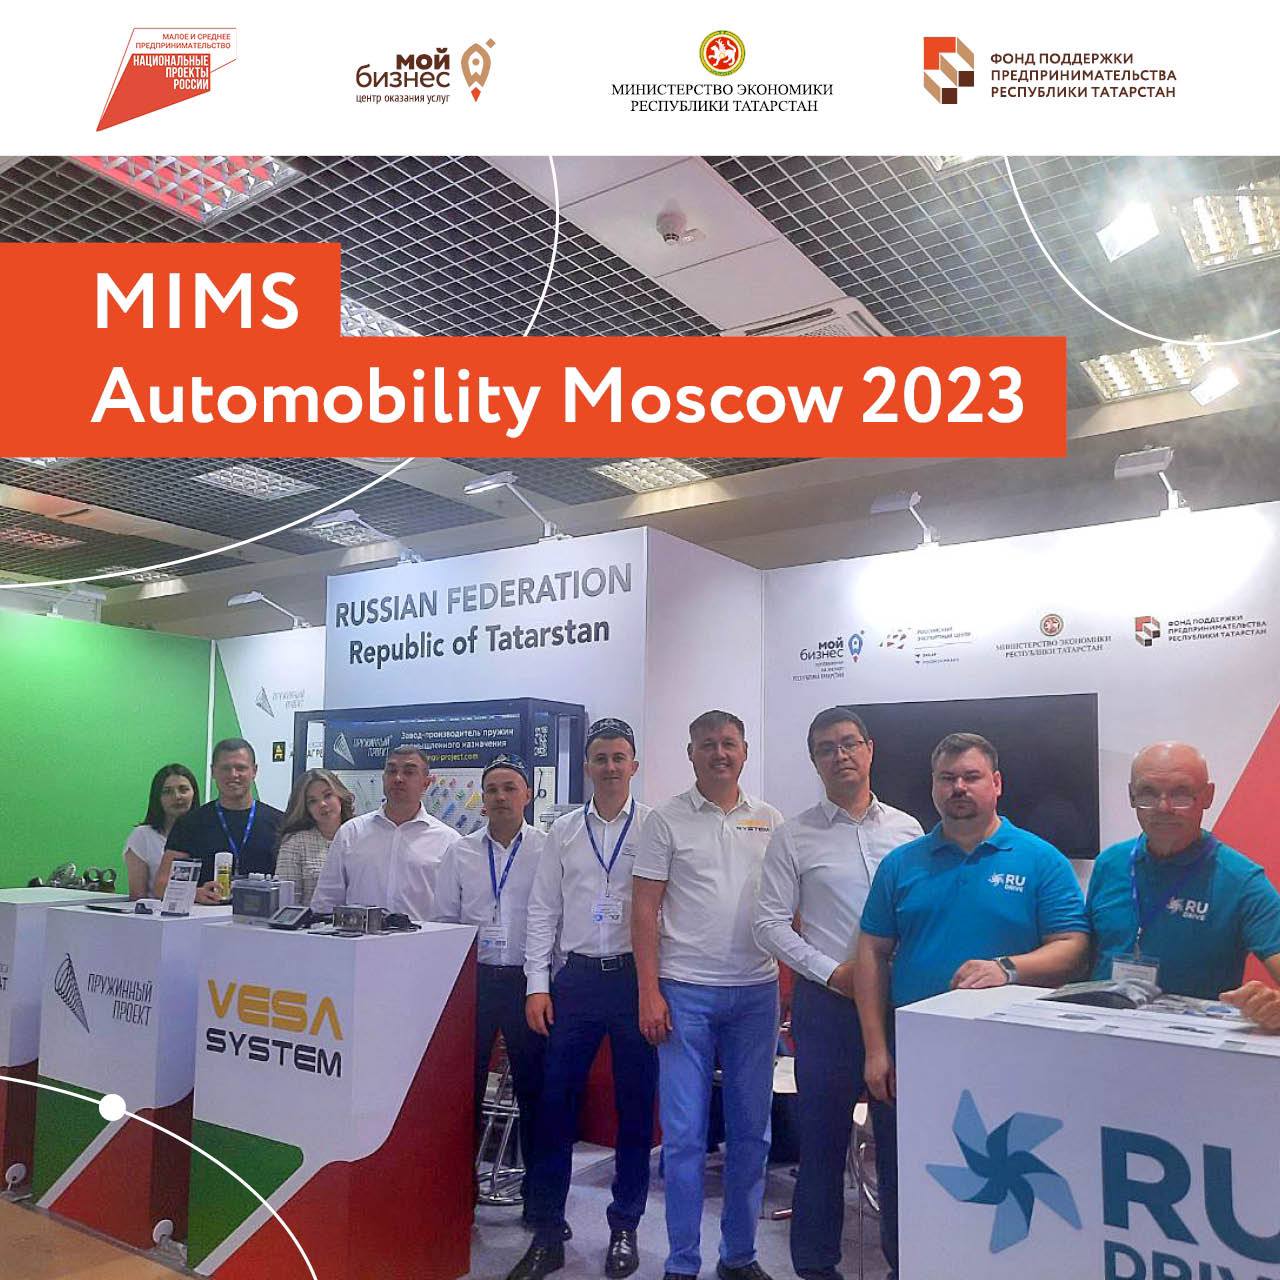 5 татарстанских компаний принимают участие в 27-ой международной выставке запчастей, автокомпонентов, оборудования и товаров для технического обслуживания автомобилей «MIMS Automobility Moscow 2023» в Москве.